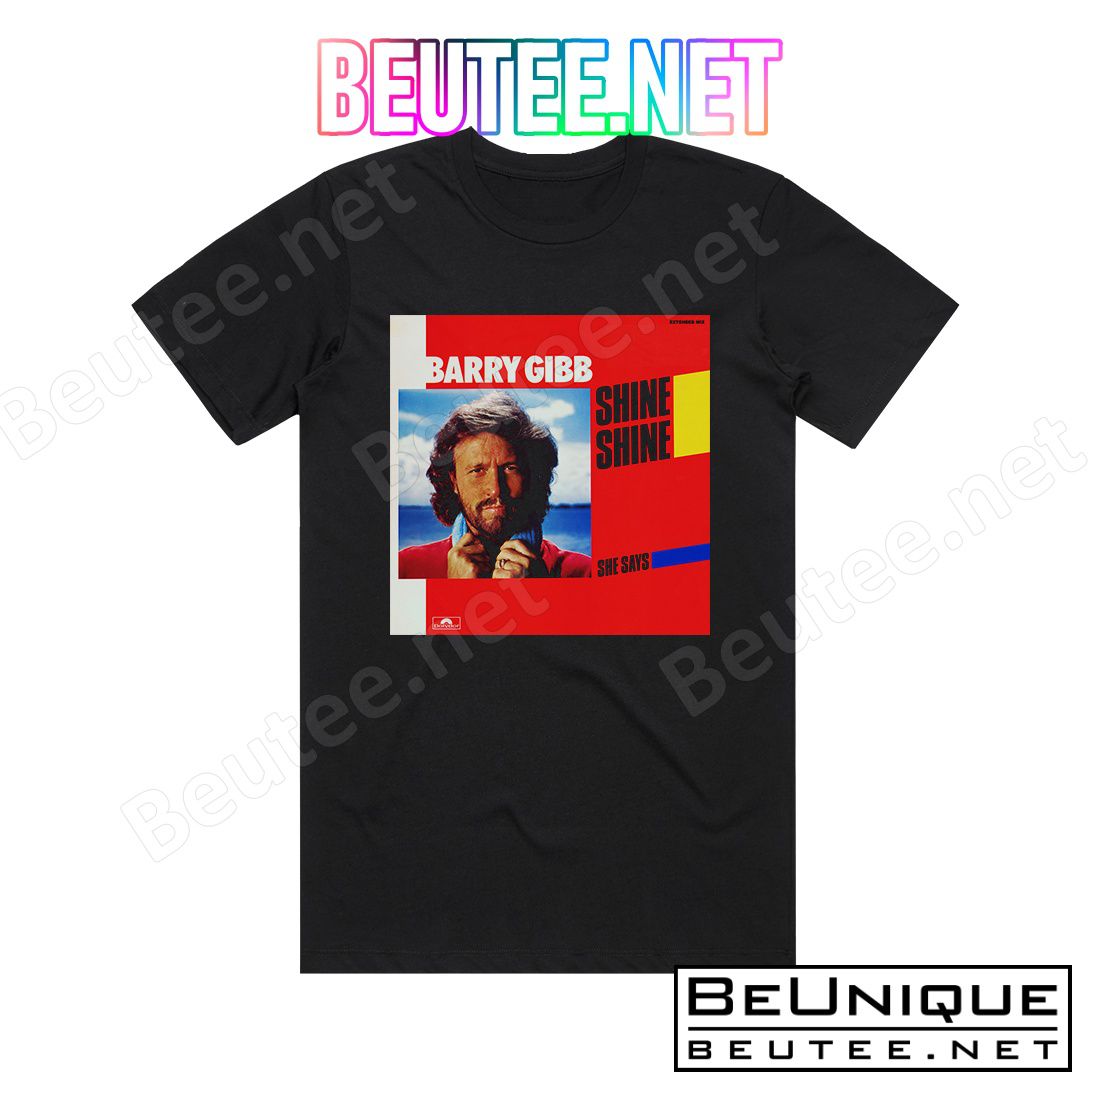 Barry Gibb Shine Shine Album Cover T-Shirt